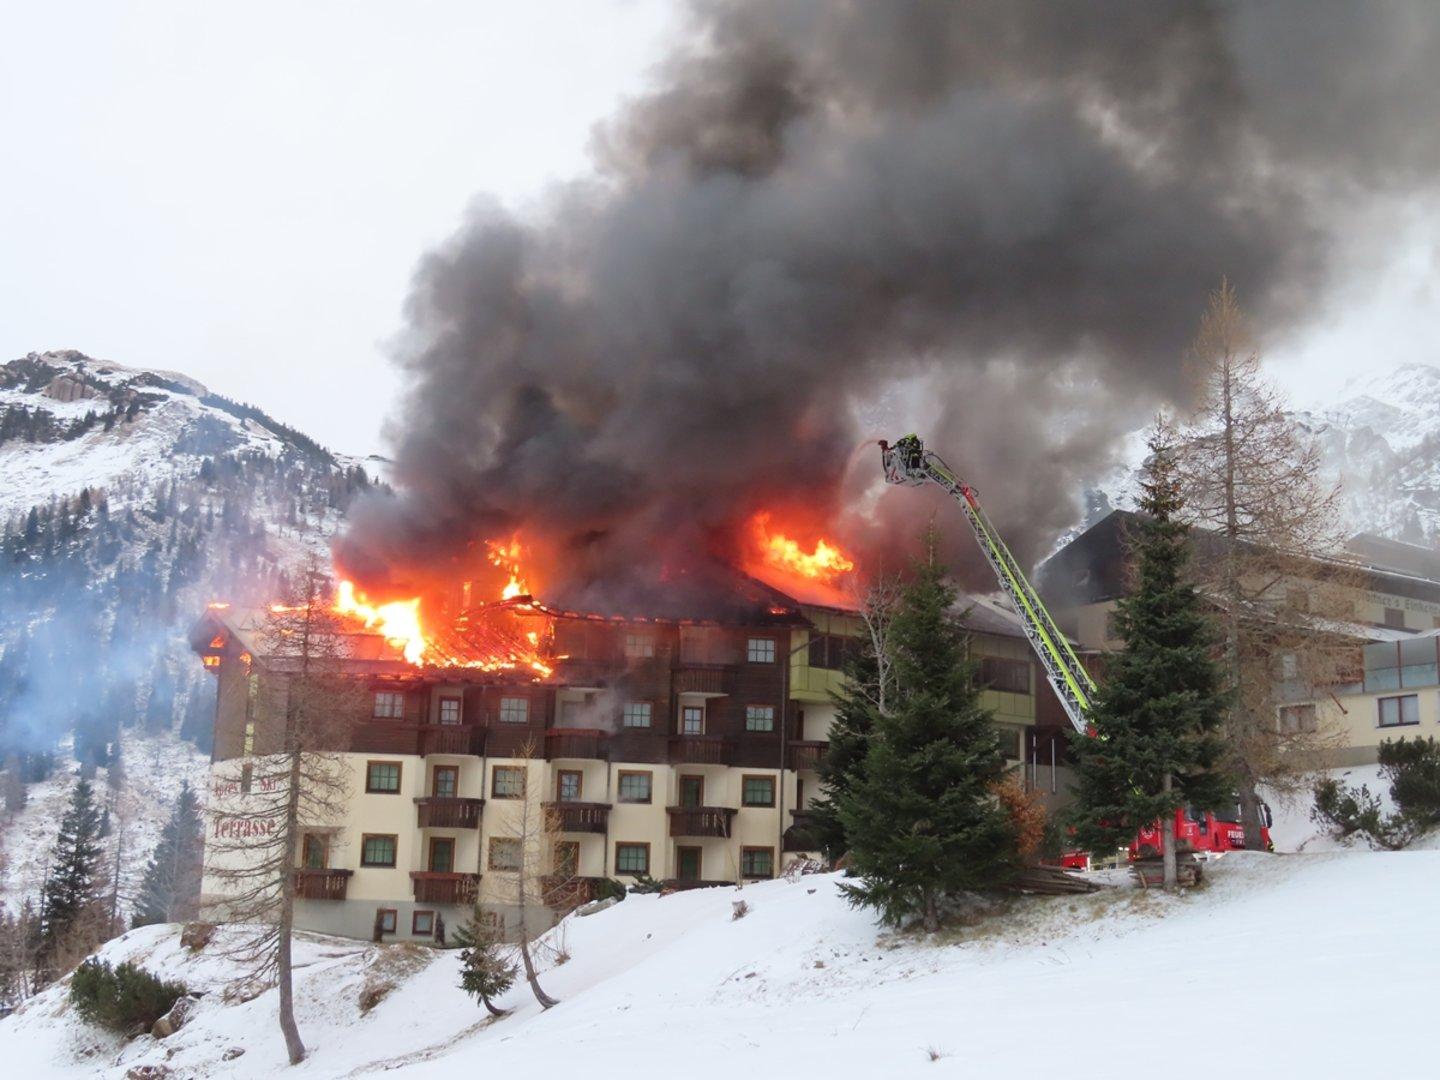 großbrand bei kärntner hotel kurz vor wiedereröffnung